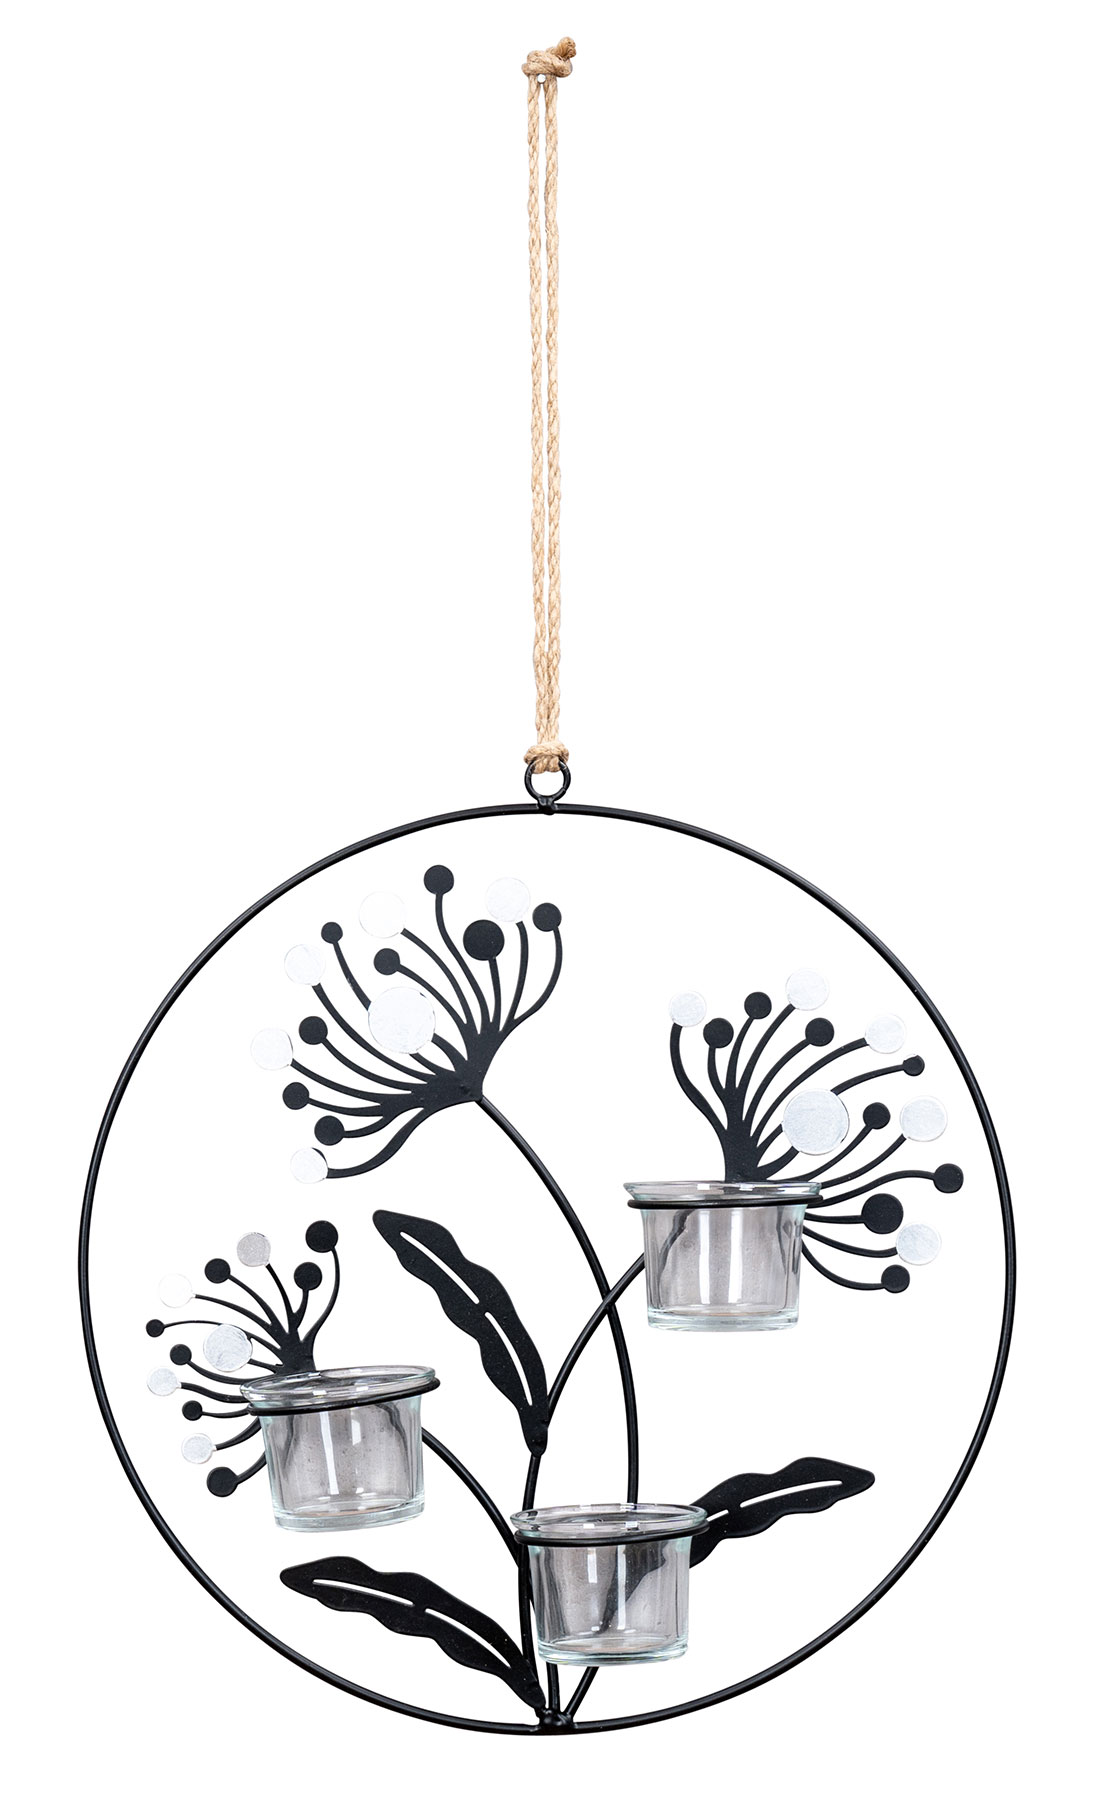 Wand Teelichthalter 30cm Rund Metall Schwarz Silber Blumen Ring Kerzenhalter